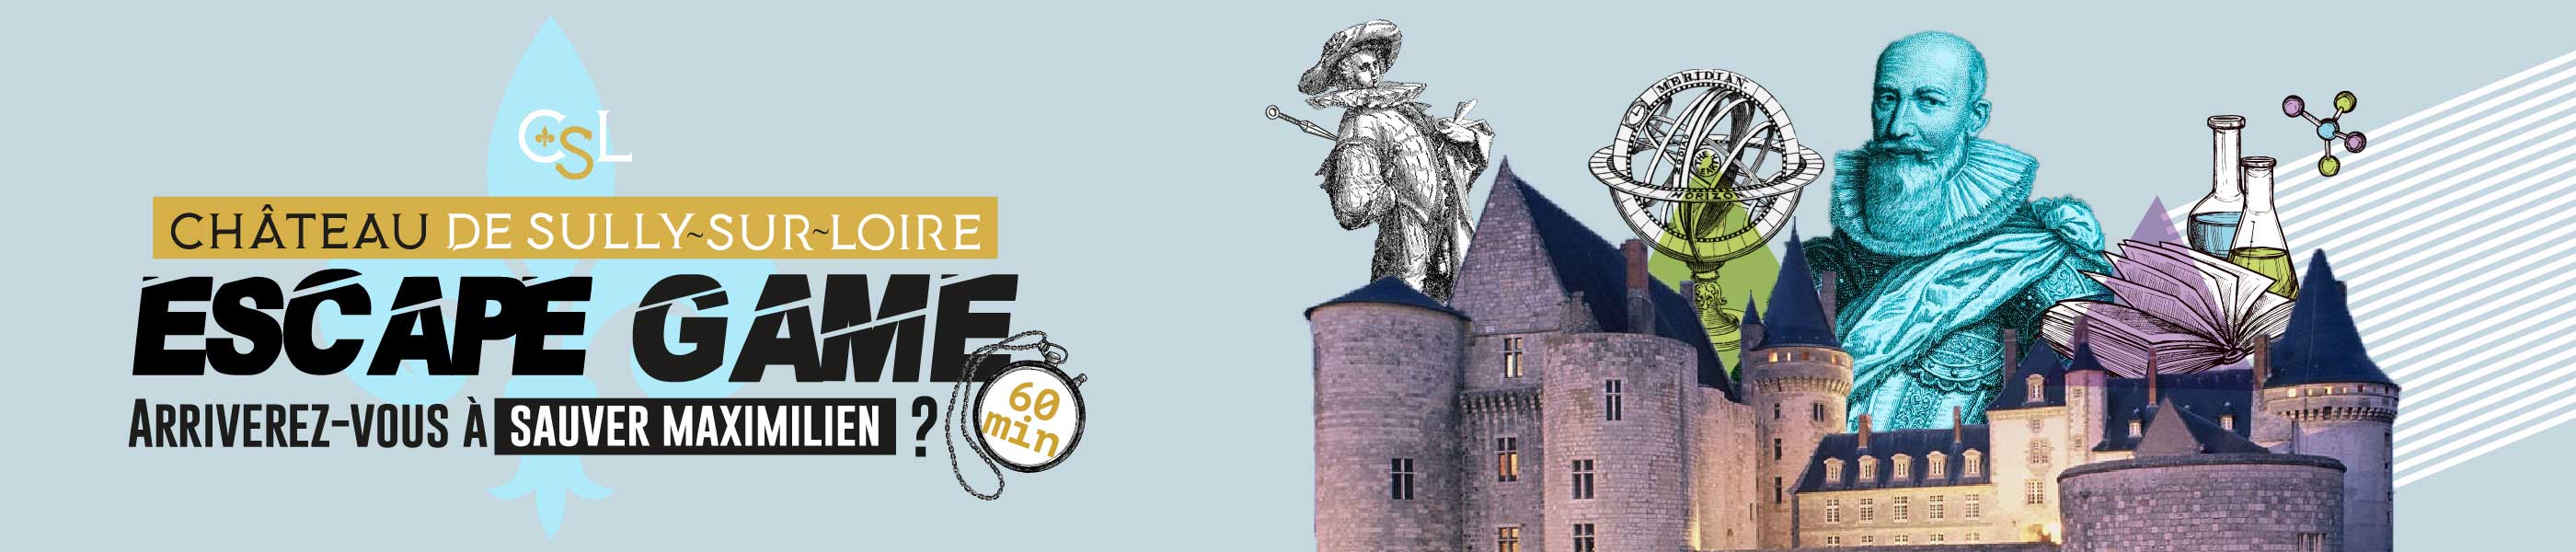 Escape Game - Château de Sully